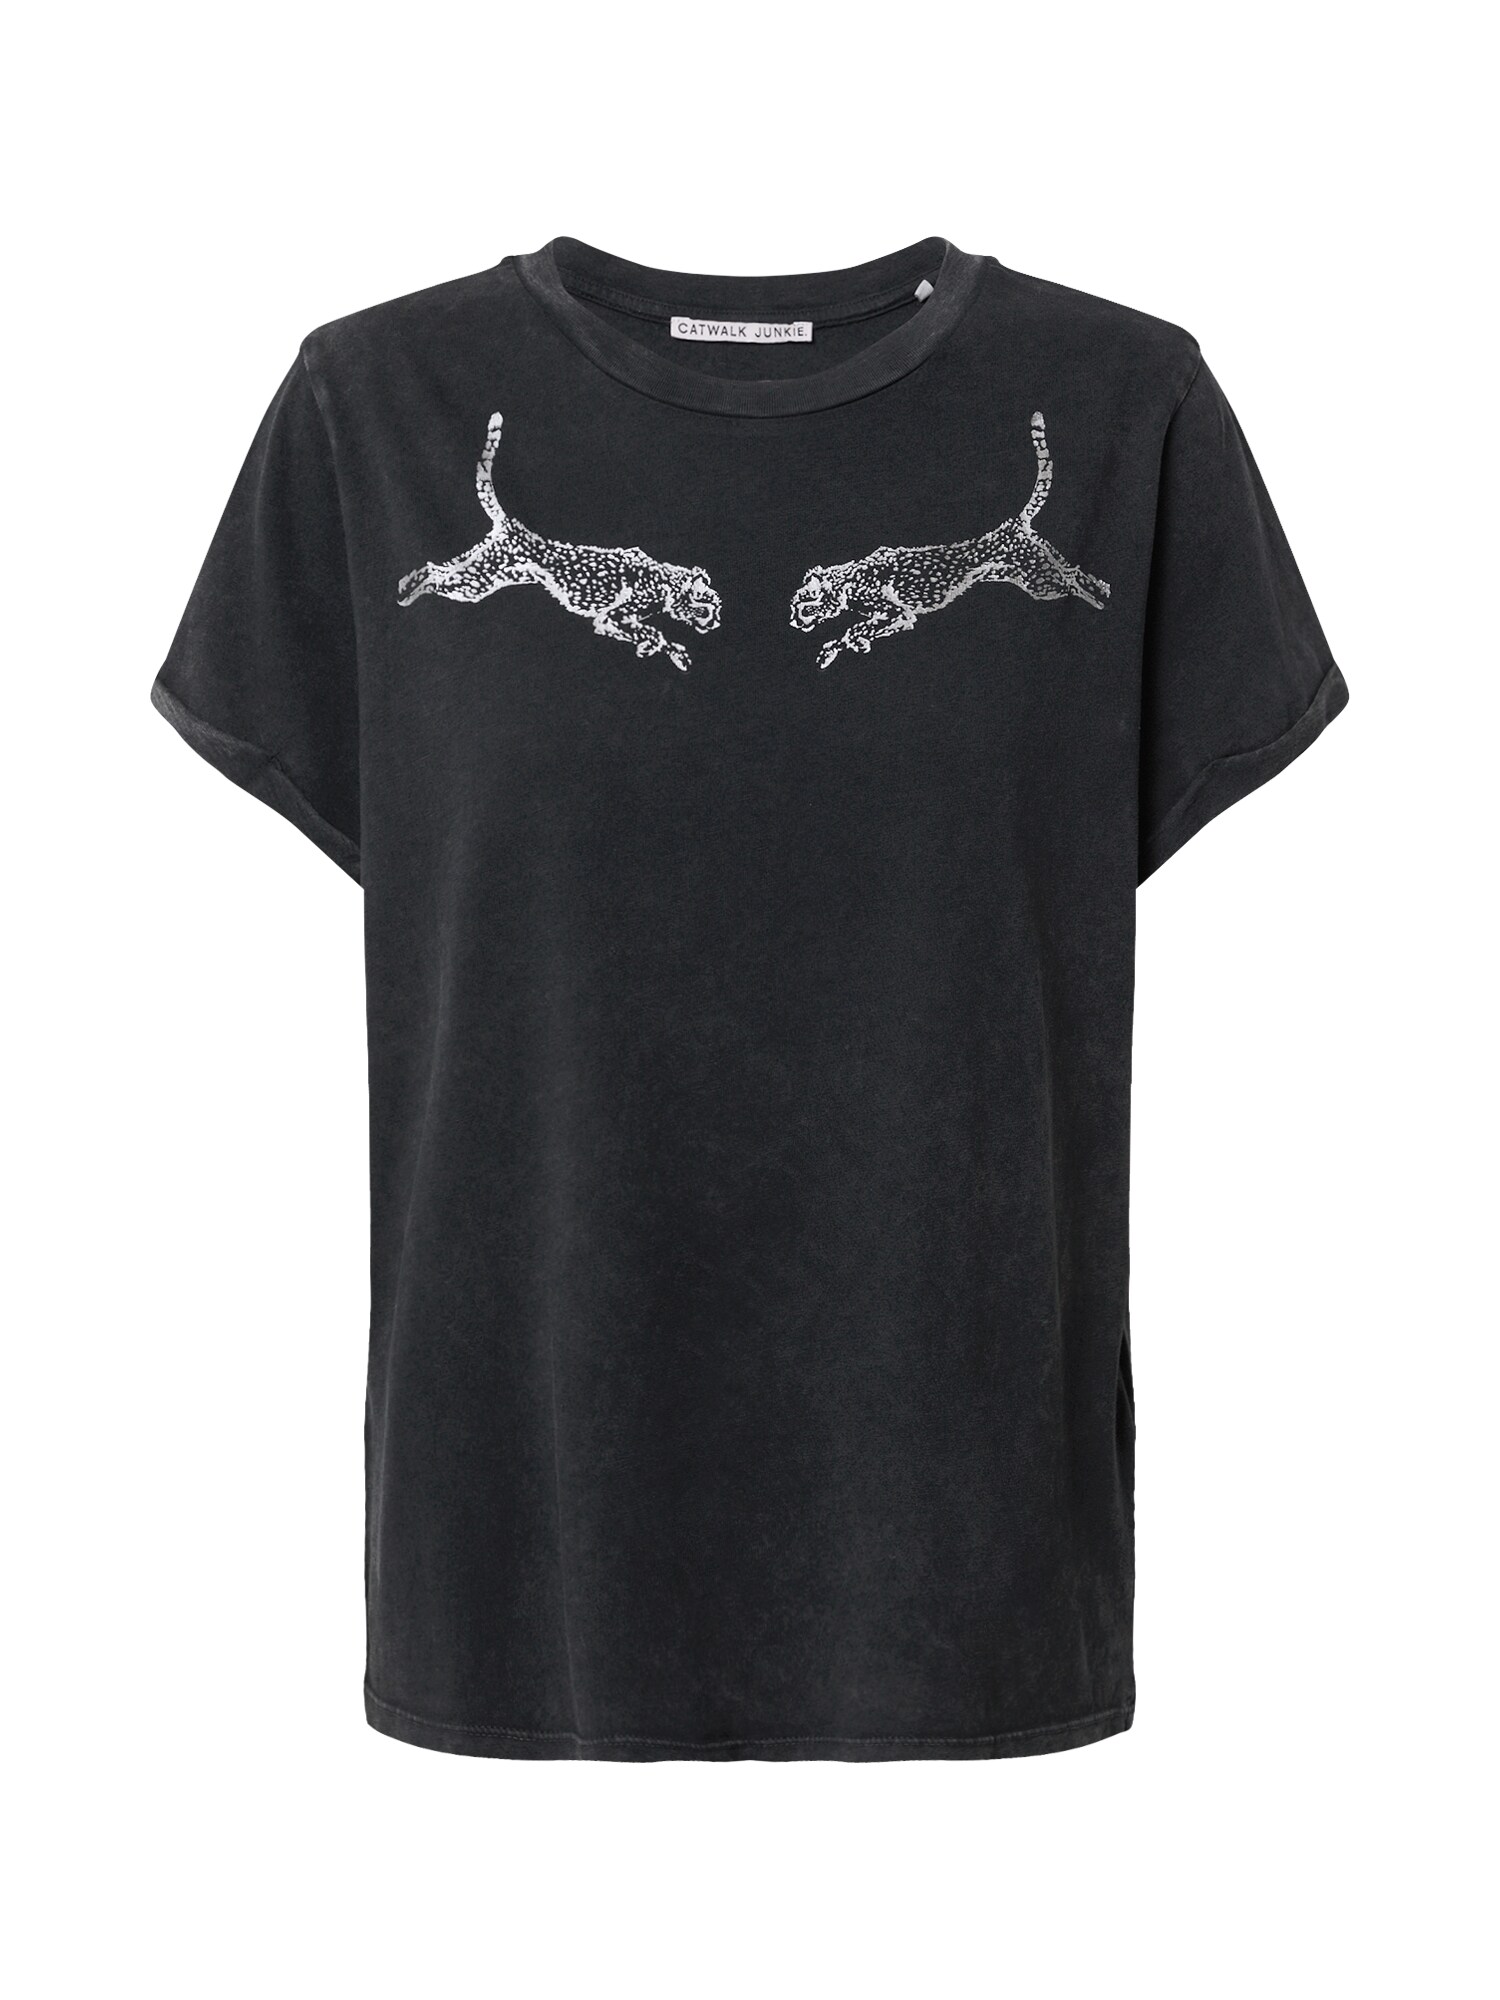 CATWALK JUNKIE Marškinėliai 'Jumping  Cheetah'  tamsiai pilka / sidabrinė